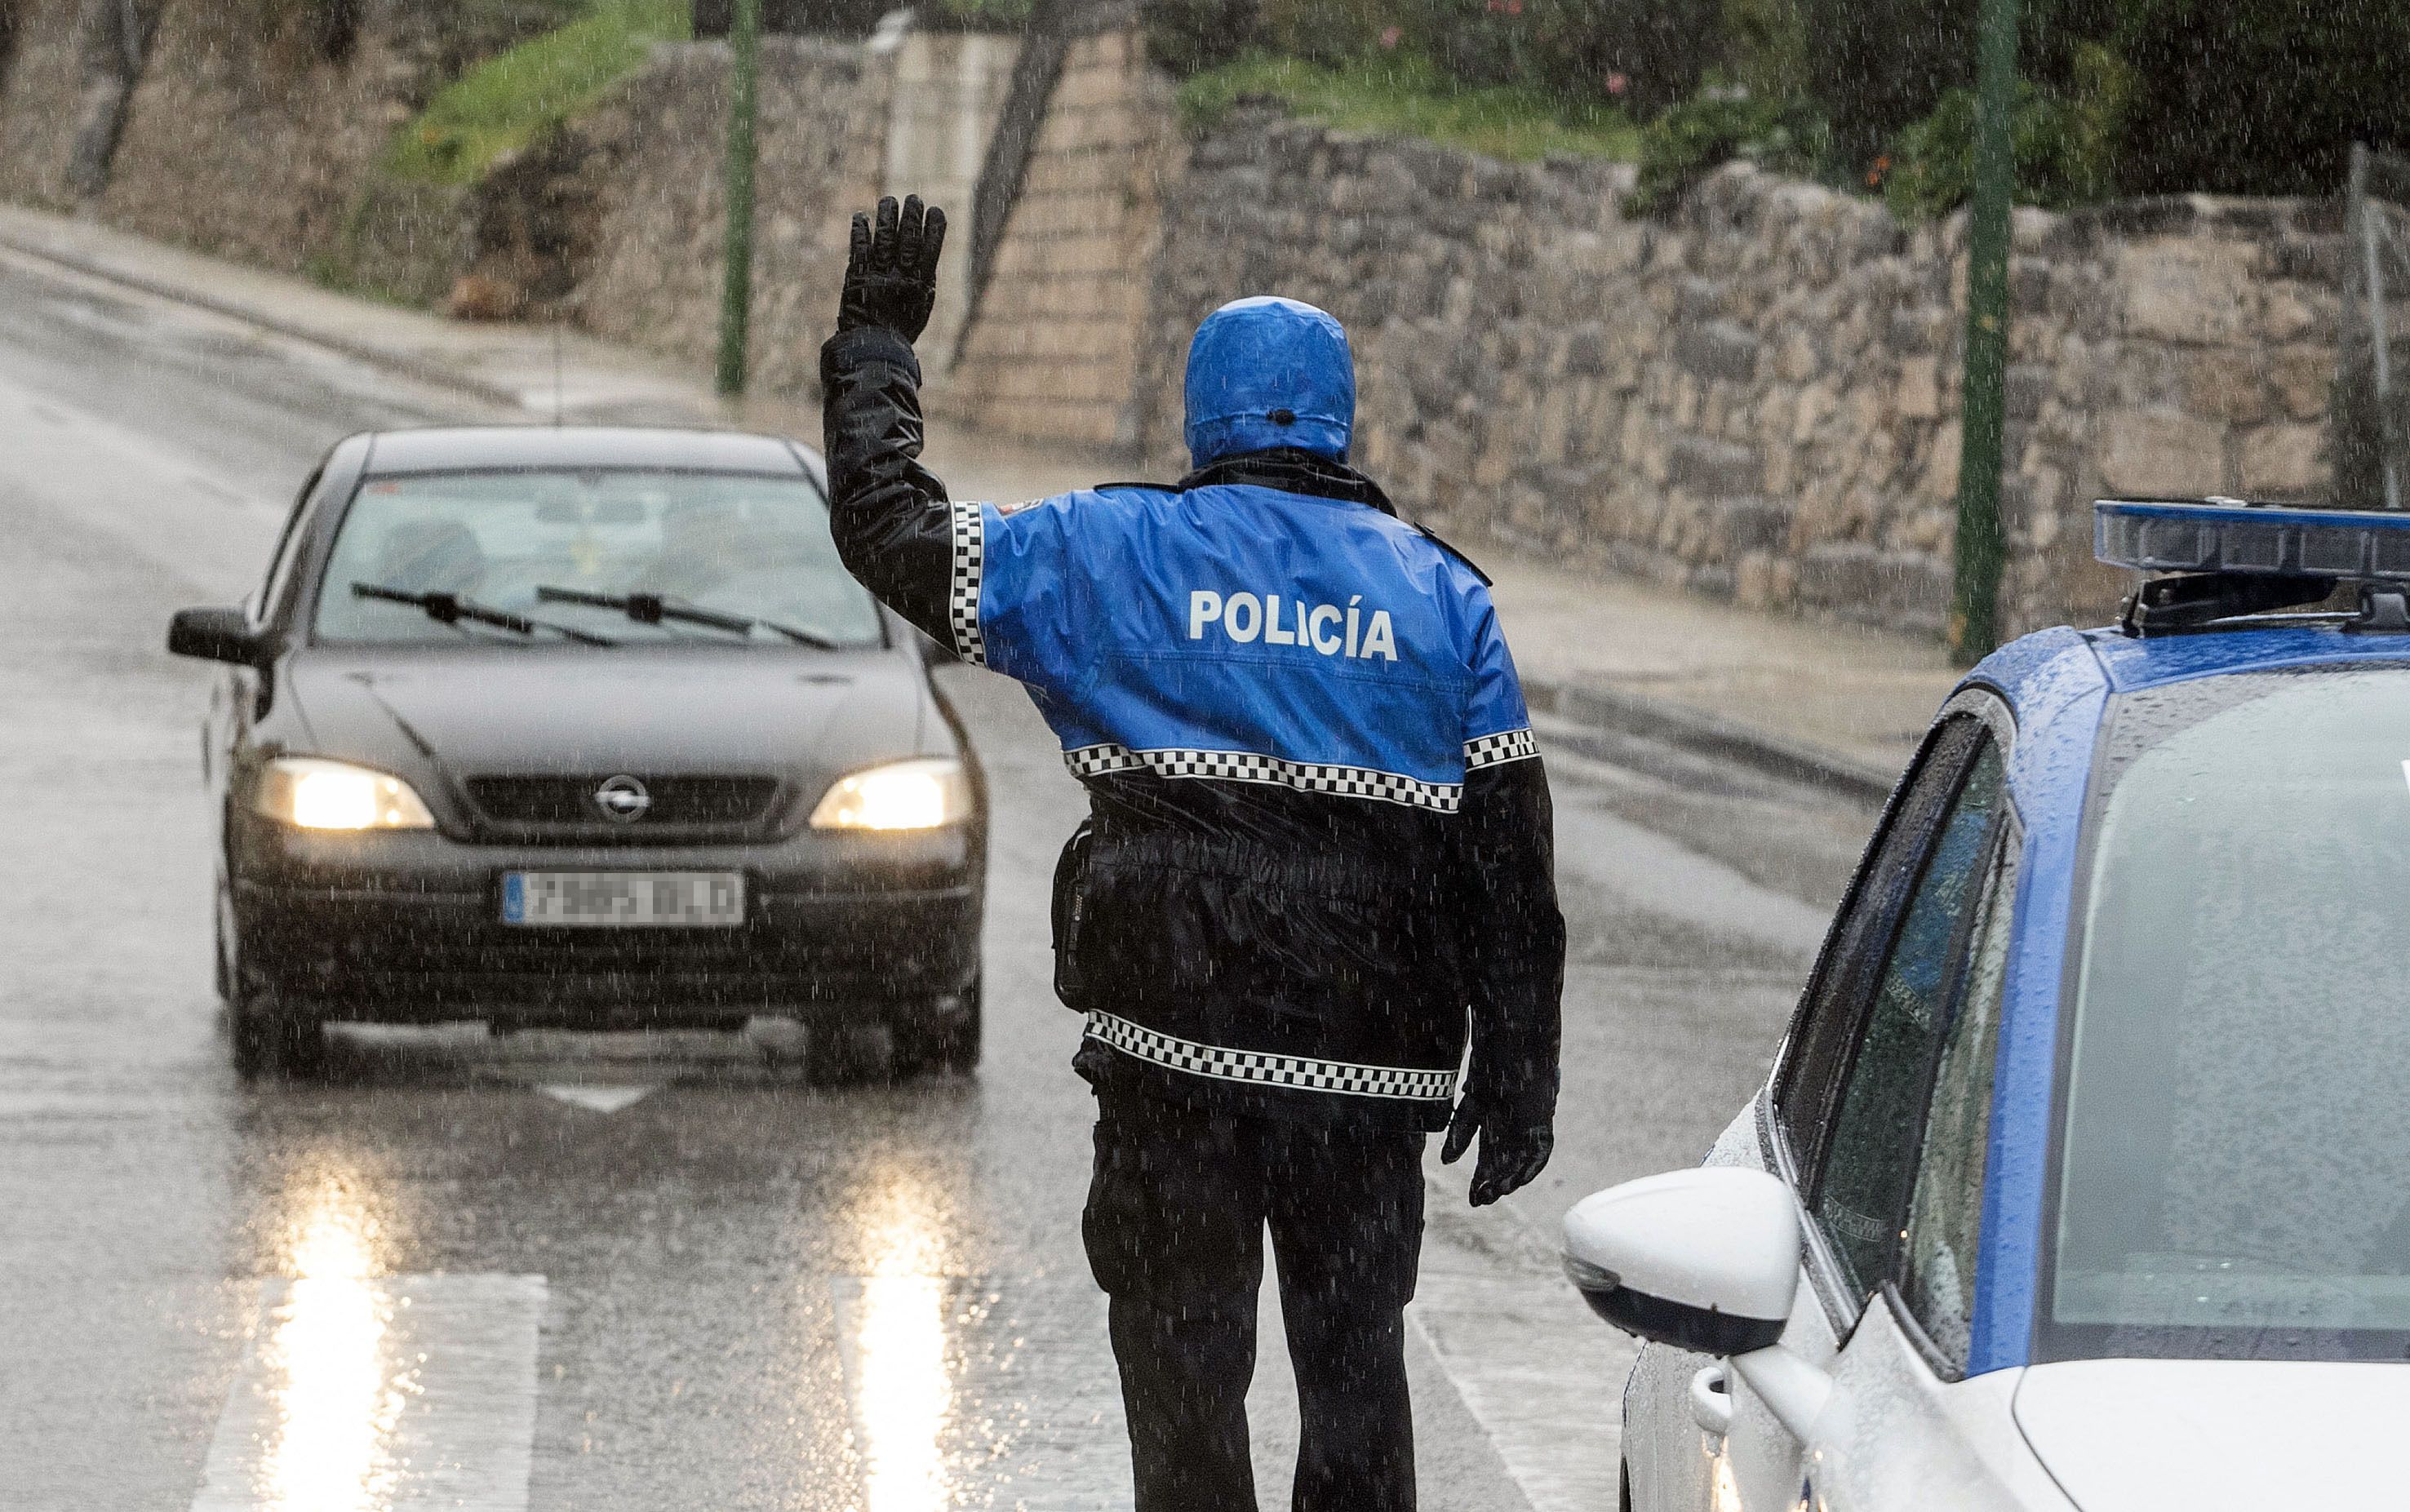 Policia local burgos EP